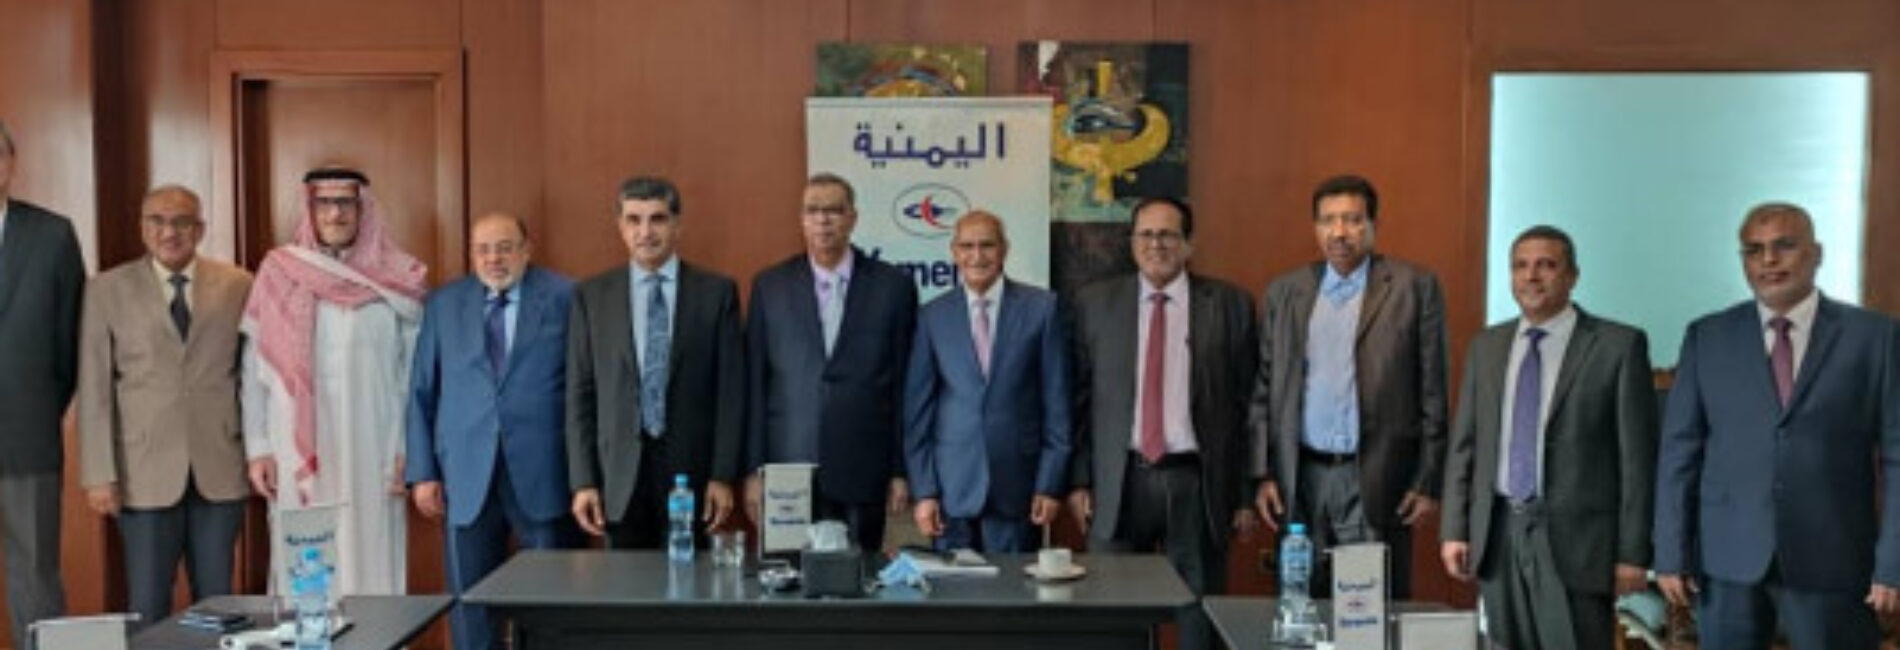 مجلس الإدارة يعقد اجتماعه الدوري في القاهرة